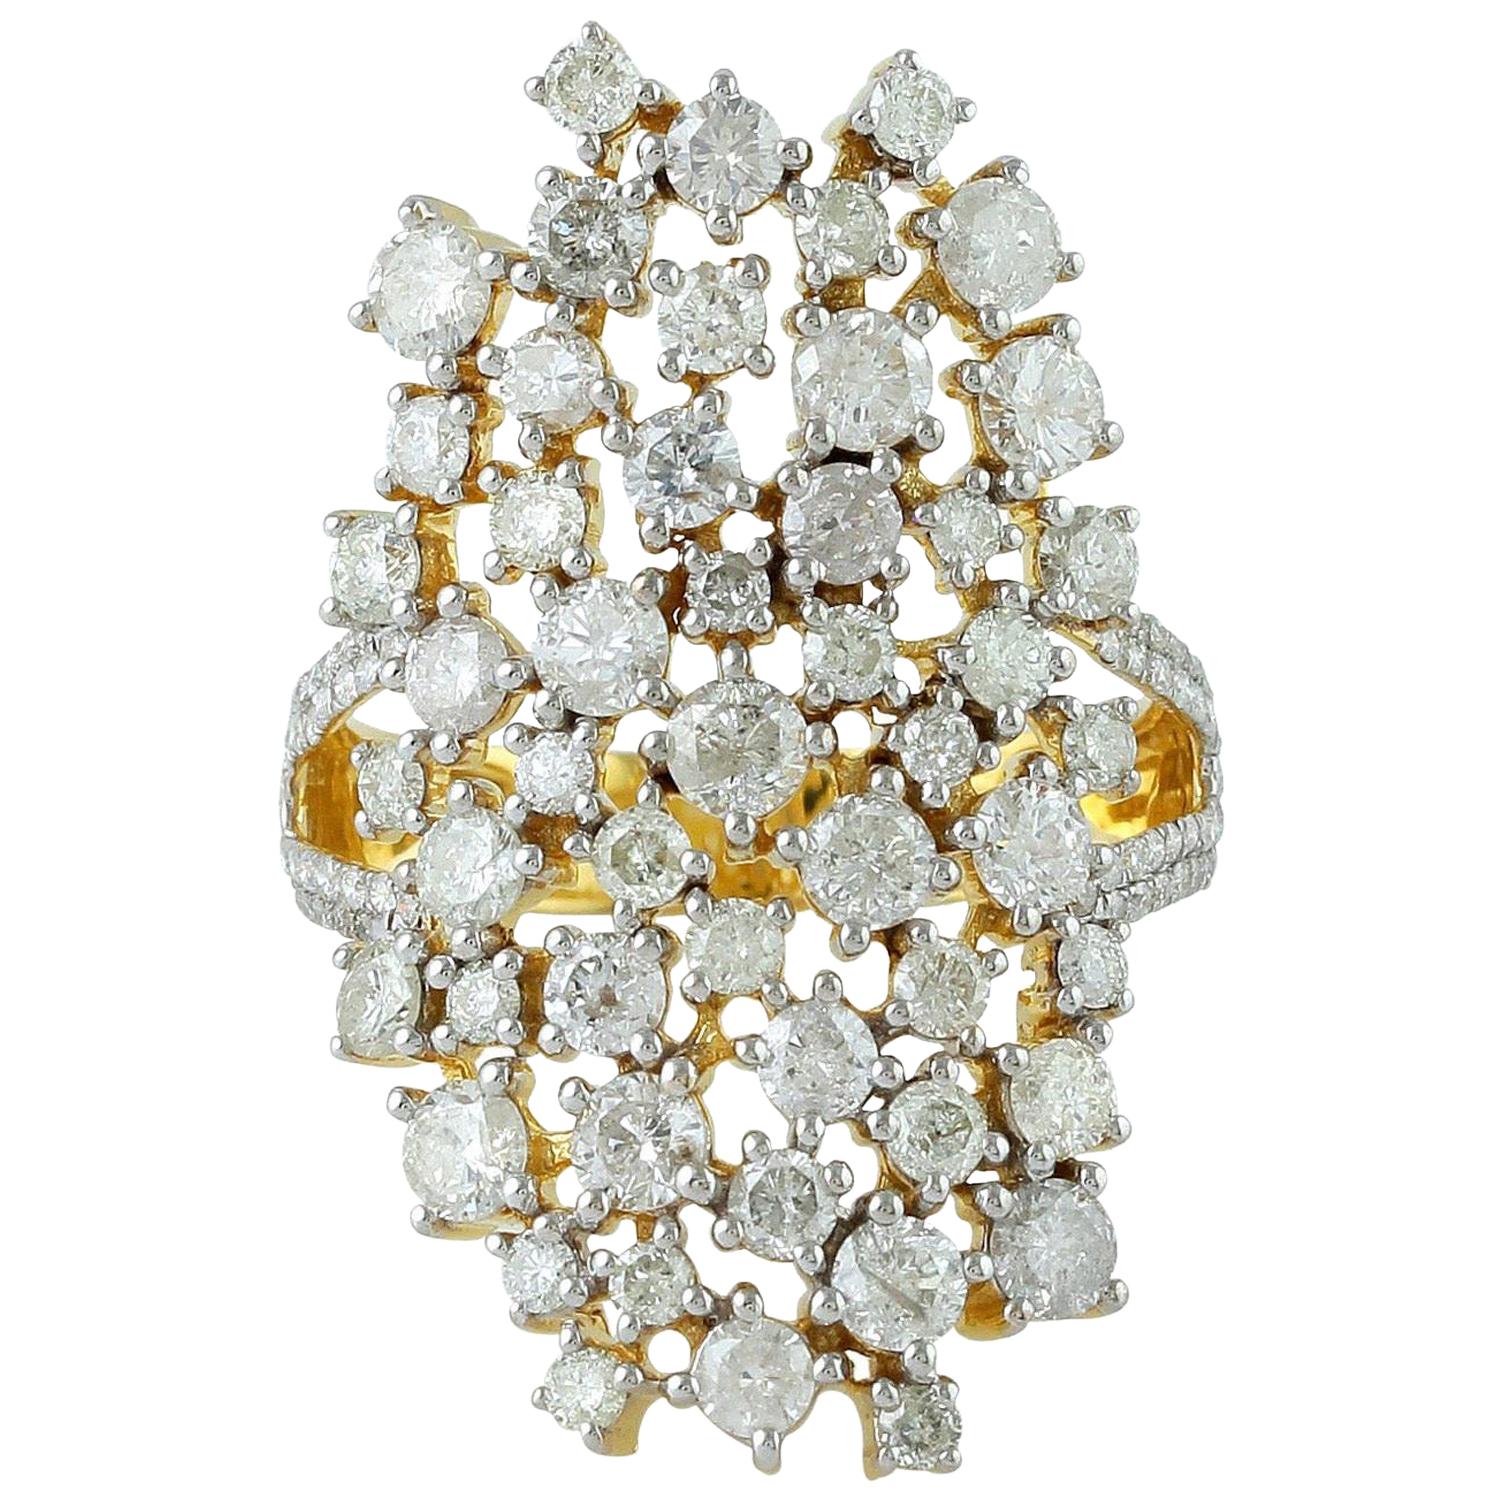 3.58 Carat Diamond Engagement 14 Karat Gold Cluster Ring